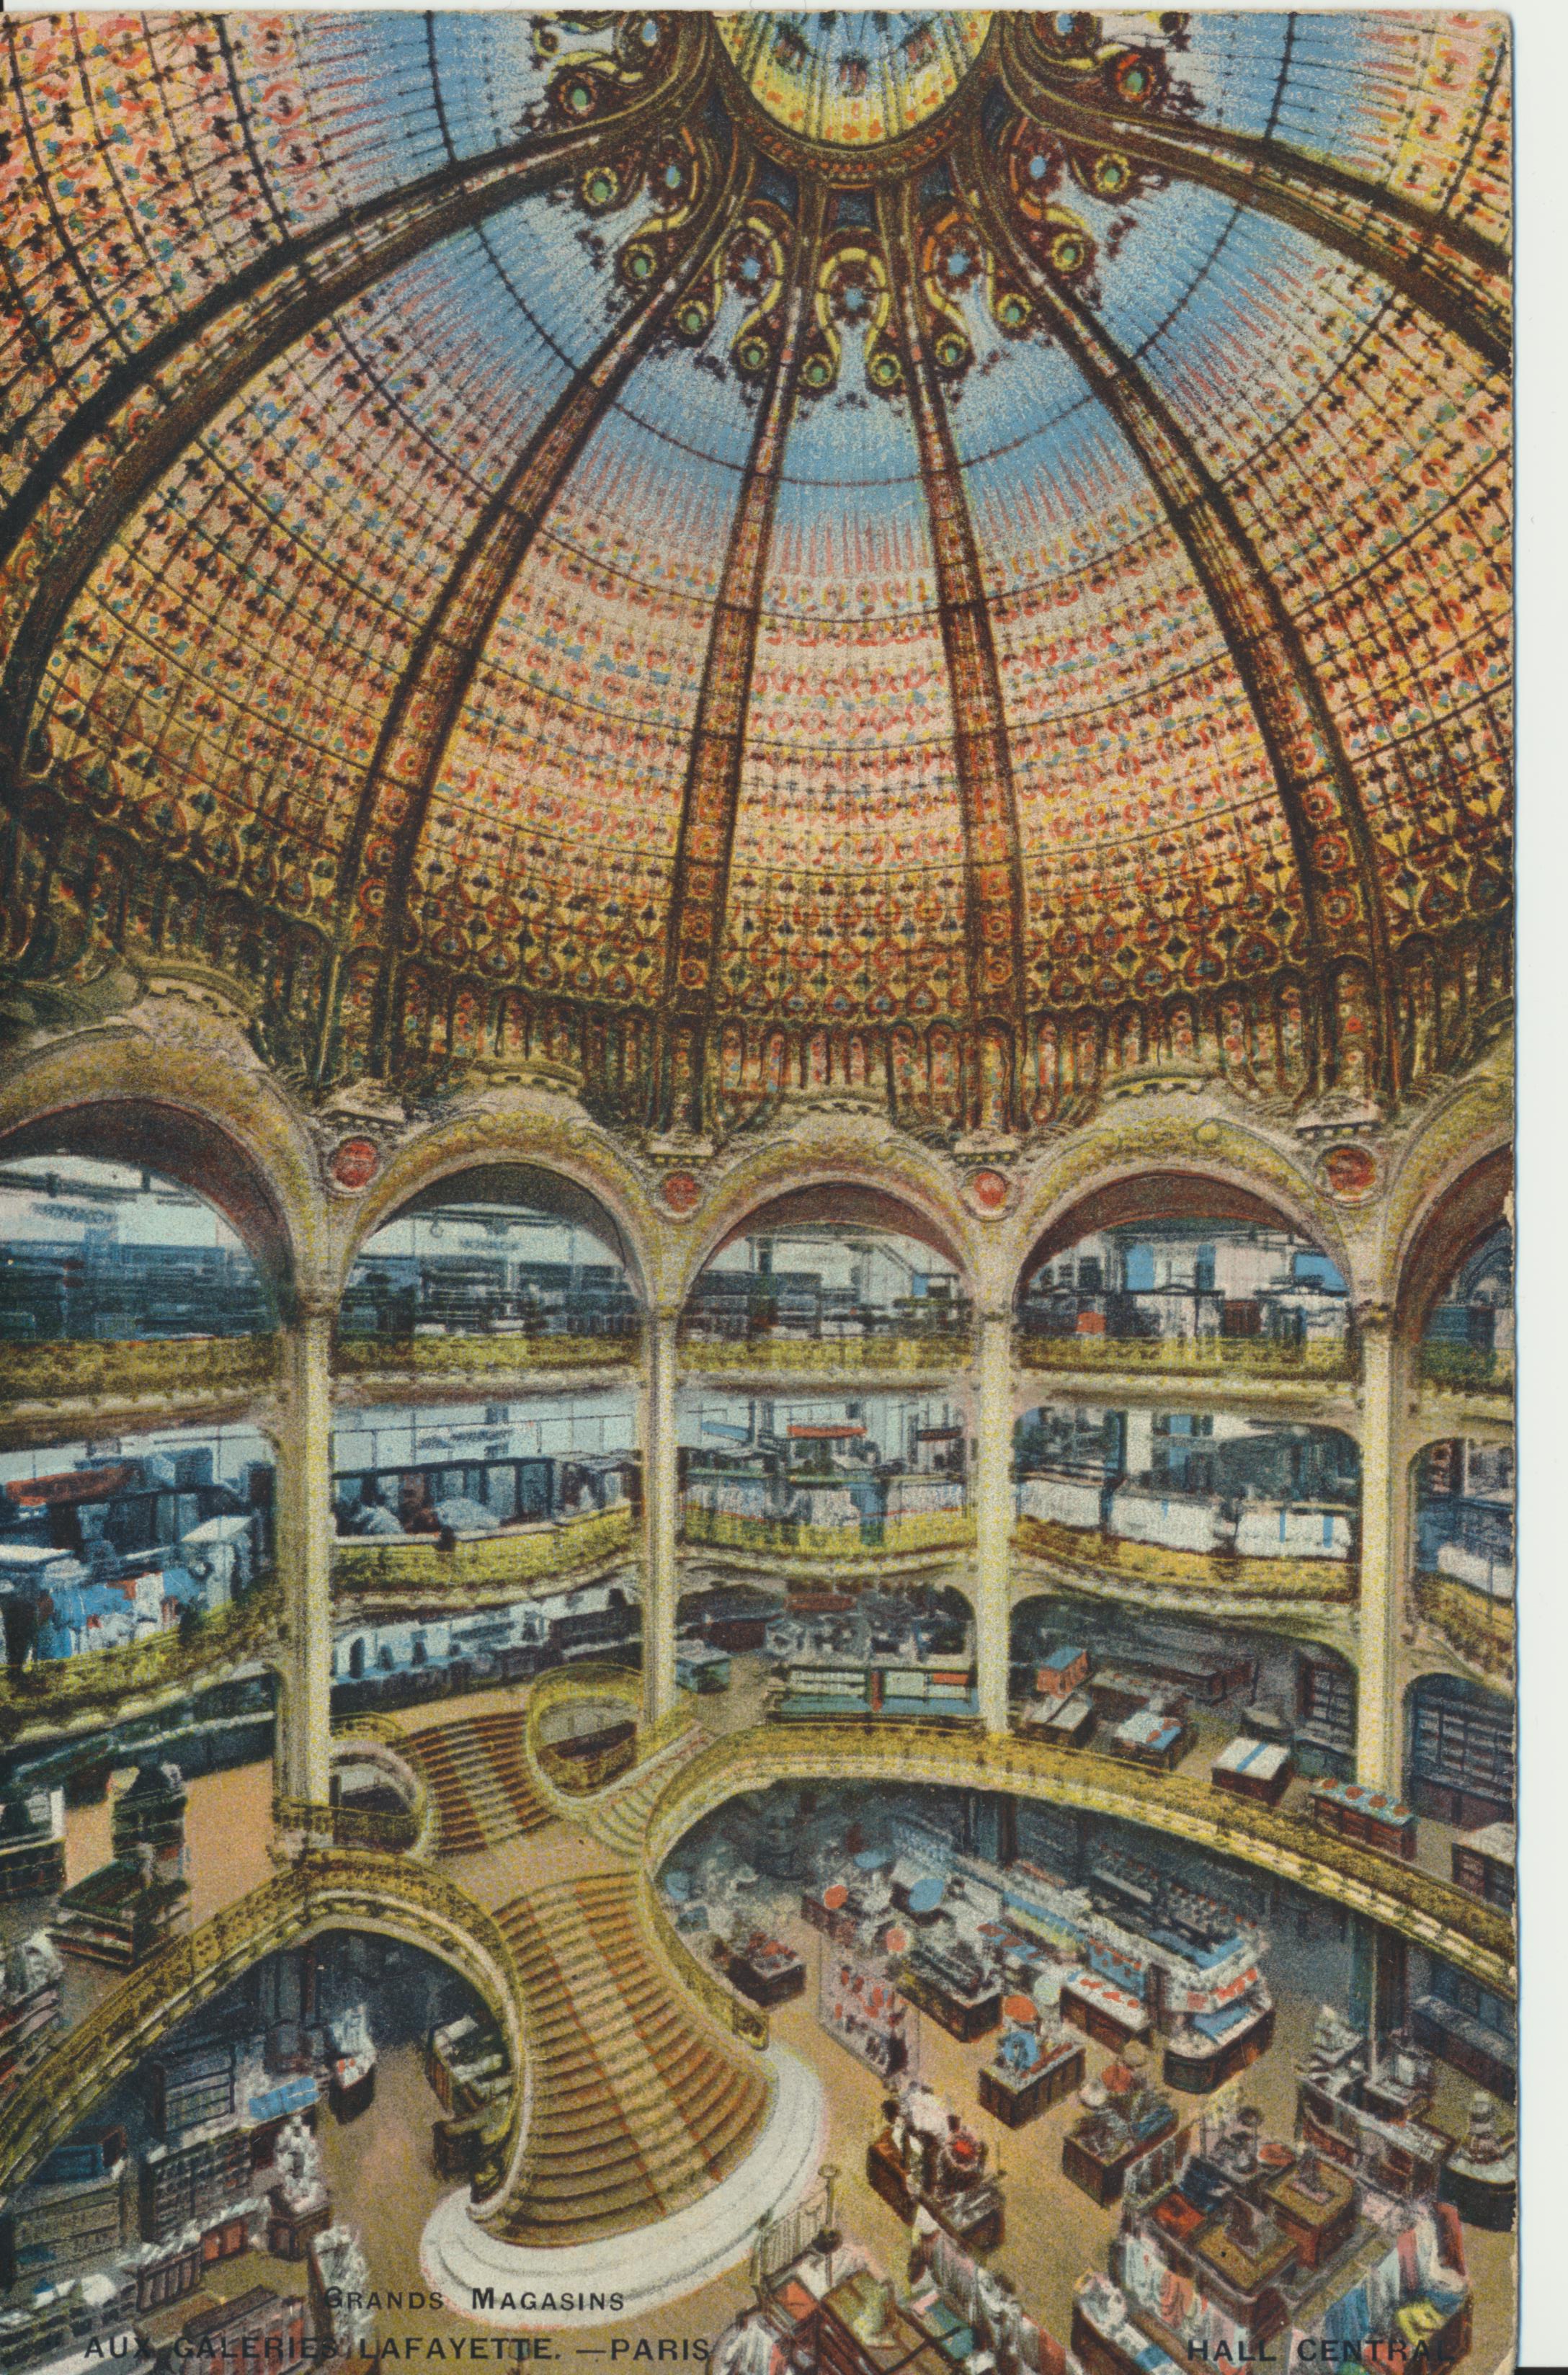 5-Vue intérieure du grand hall et de la coupole d’origine, Galeries Lafayette Paris Haussmann, carte postale, 1912 © Galeries Lafayette